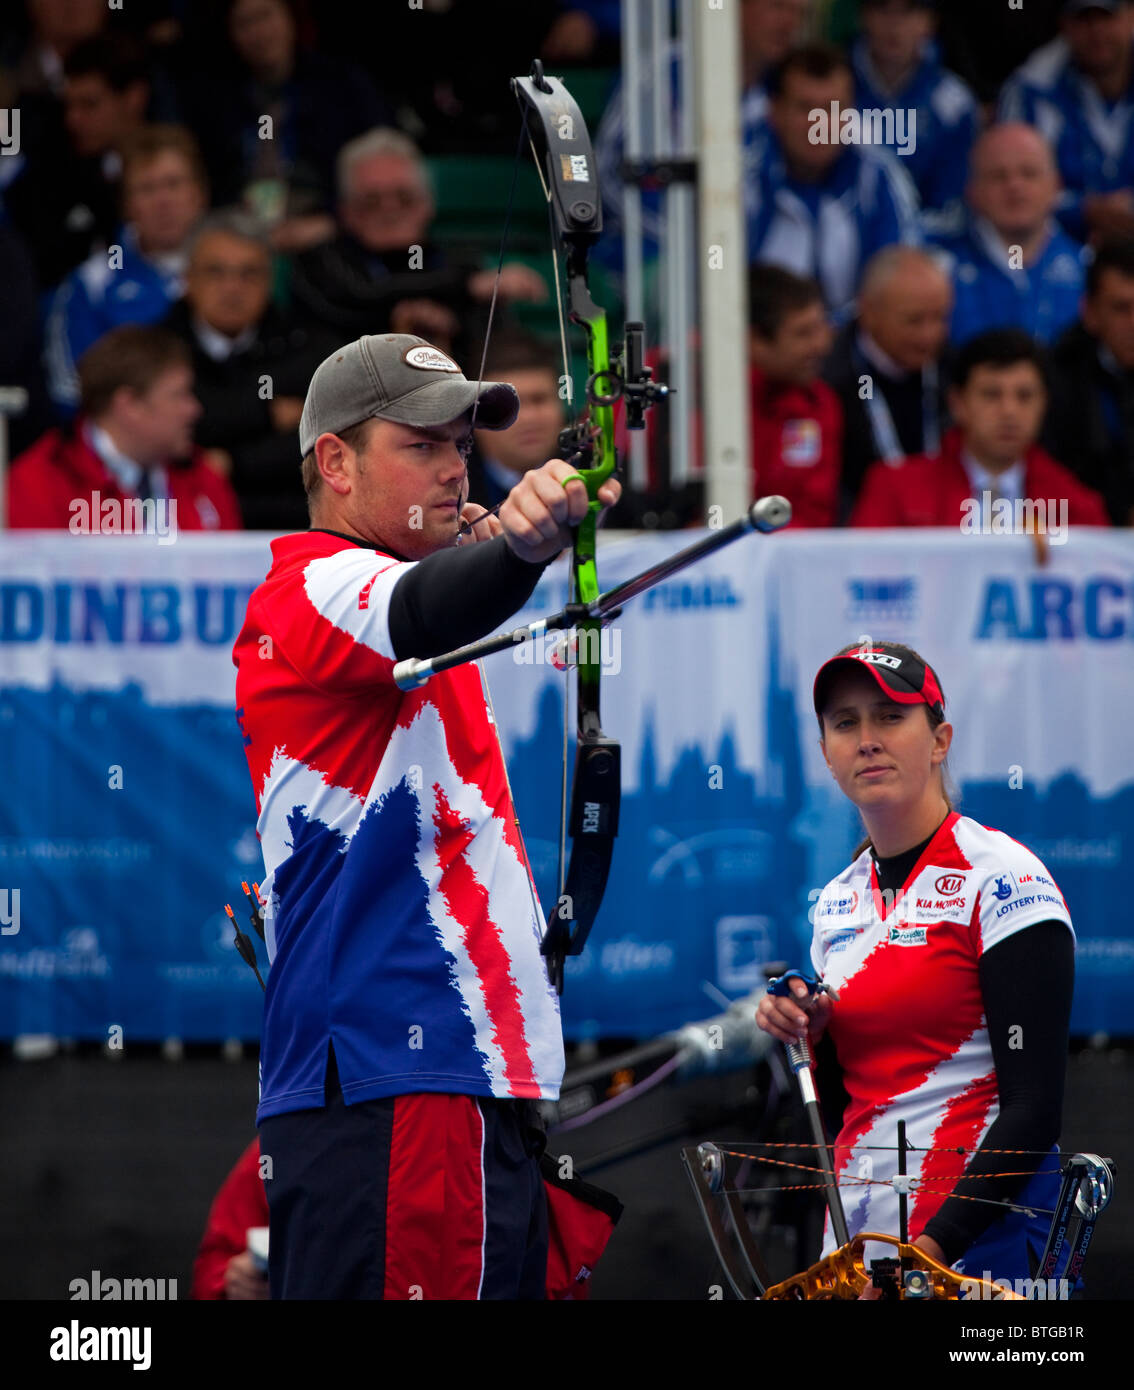 Chris White und Nicky Hunt Uk Archer mit Compoundbogen, Archery World Cup Event, Edinburgh, Schottland, Vereinigtes Königreich, Europa Stockfoto